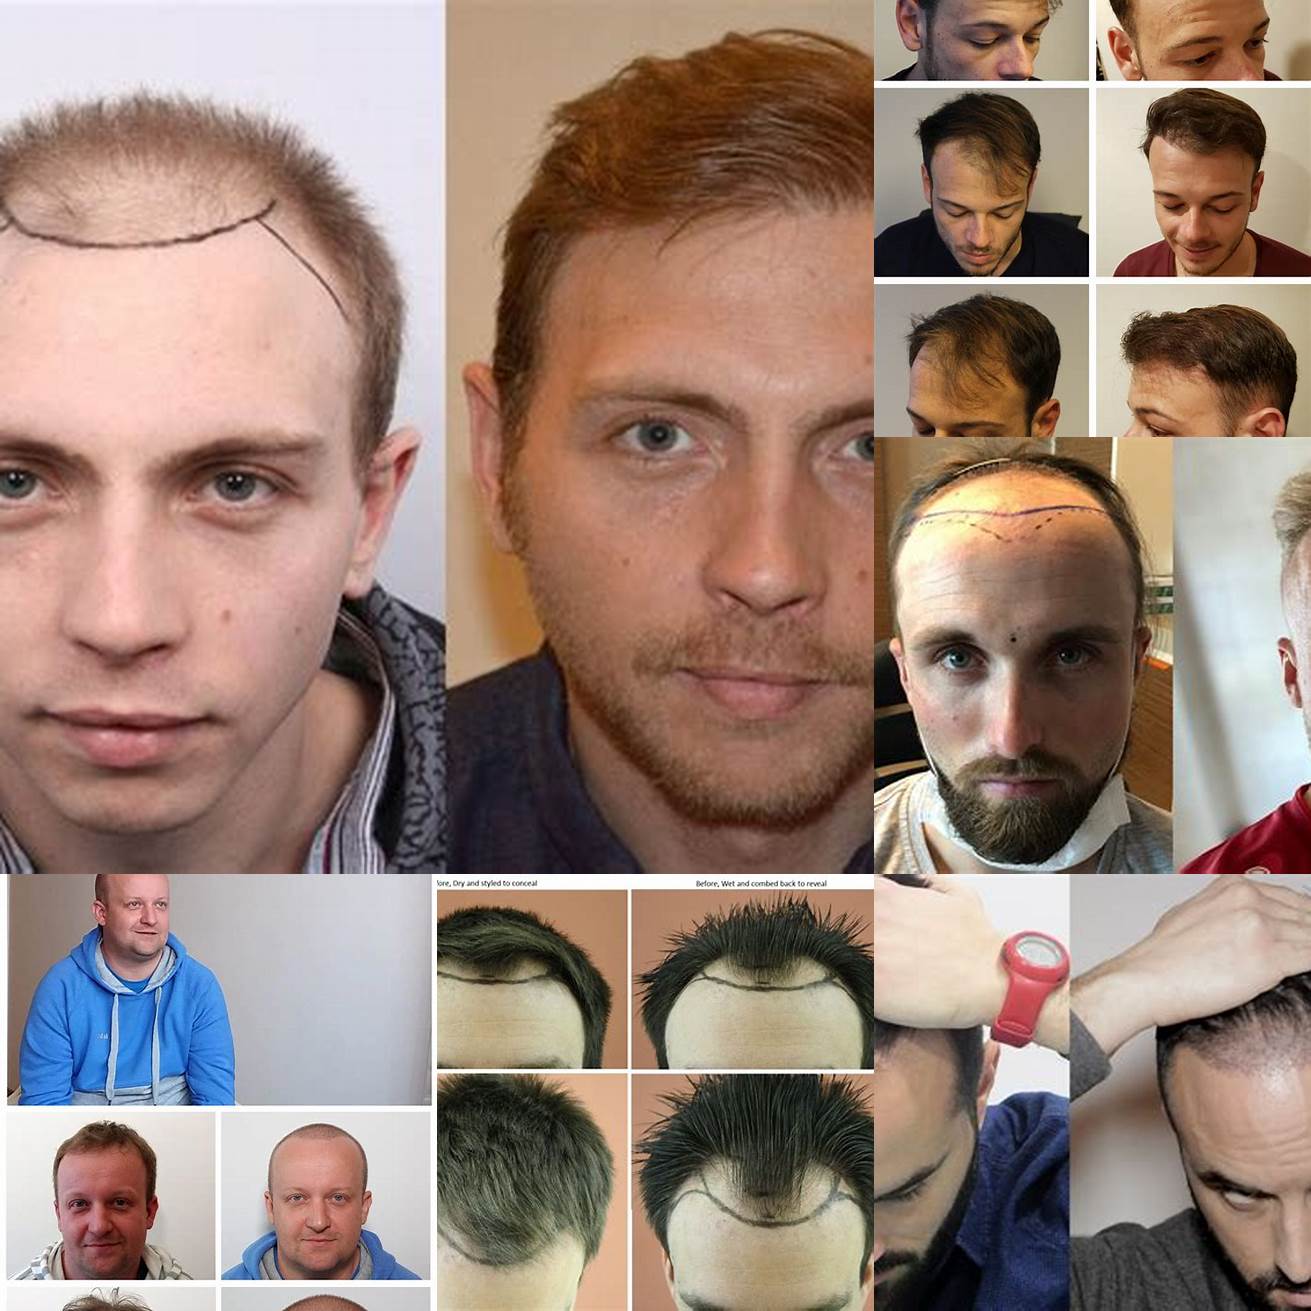 Image dune personne avant et après une greffe de cheveux